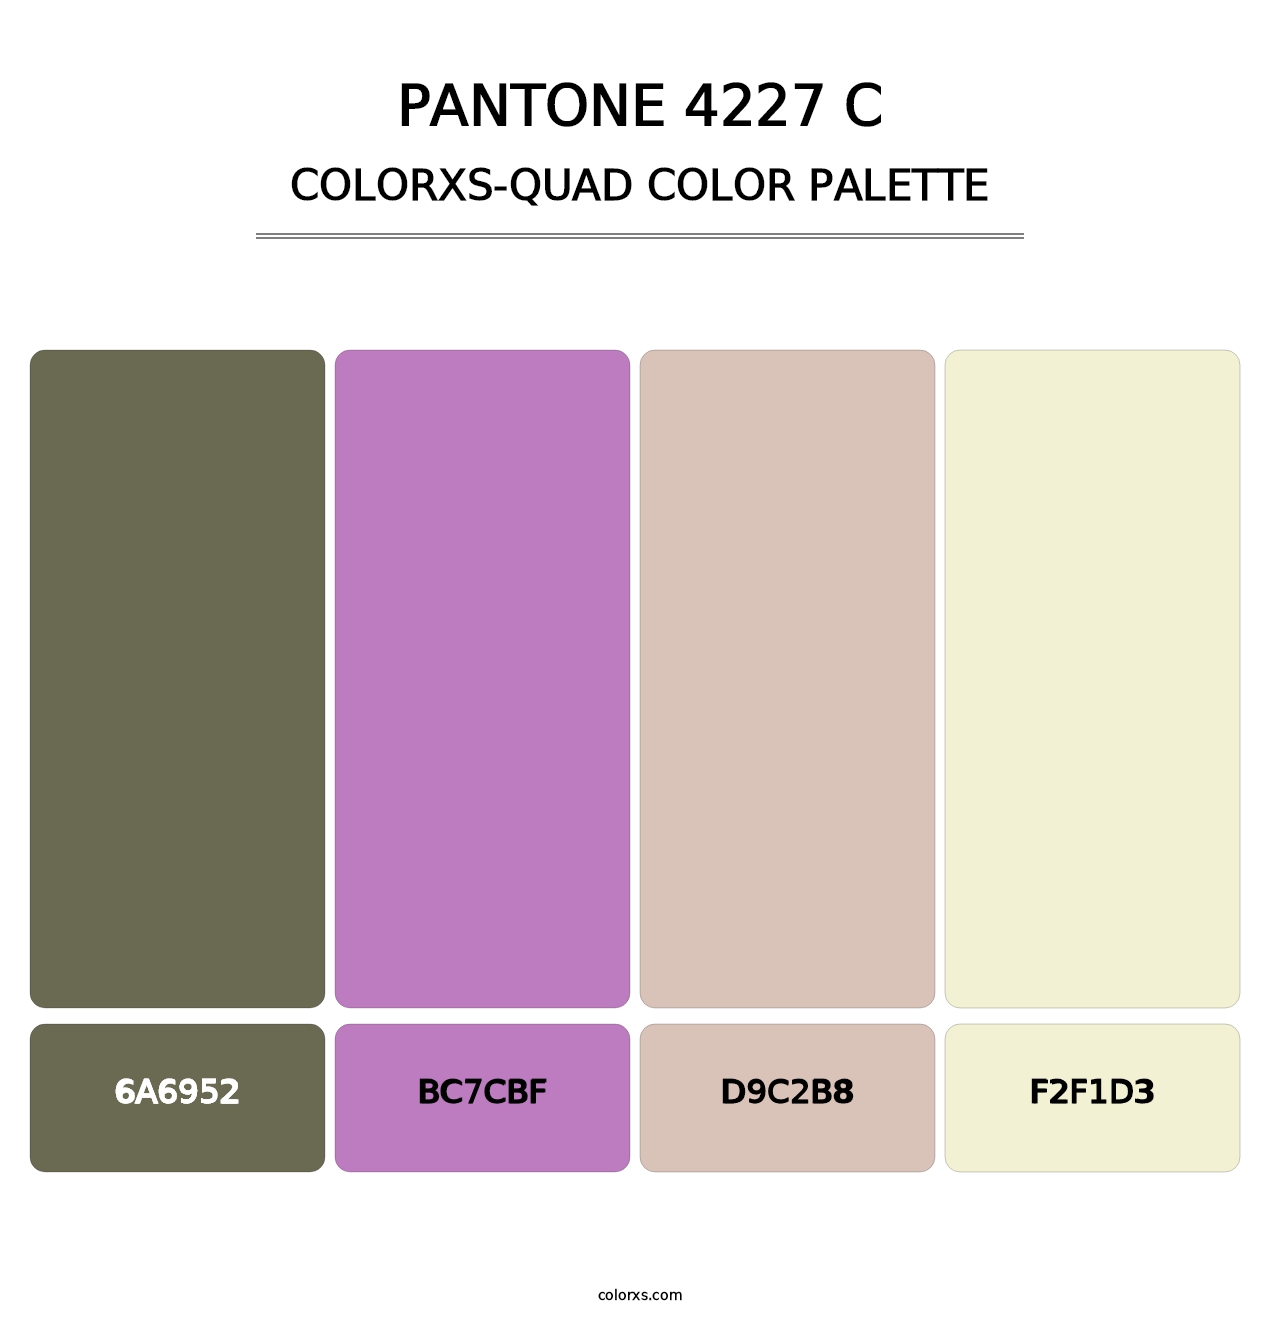 PANTONE 4227 C - Colorxs Quad Palette